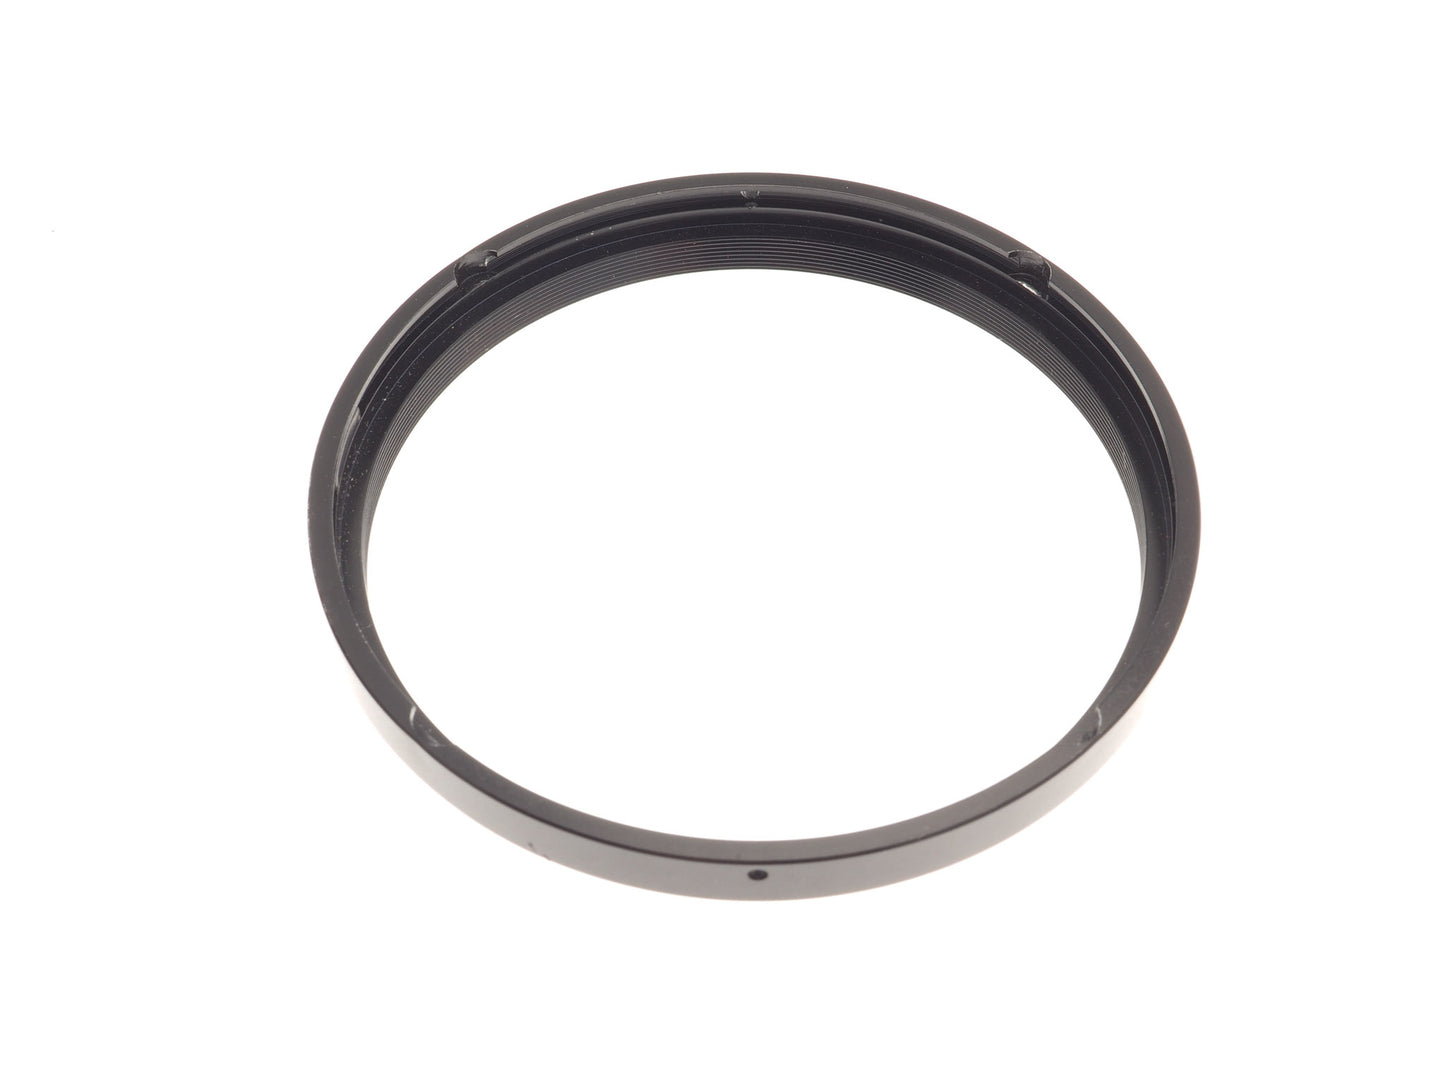 Zenza Bronica Series VIII Retaining Ring for 7.5cm & 13.5cm Lenses